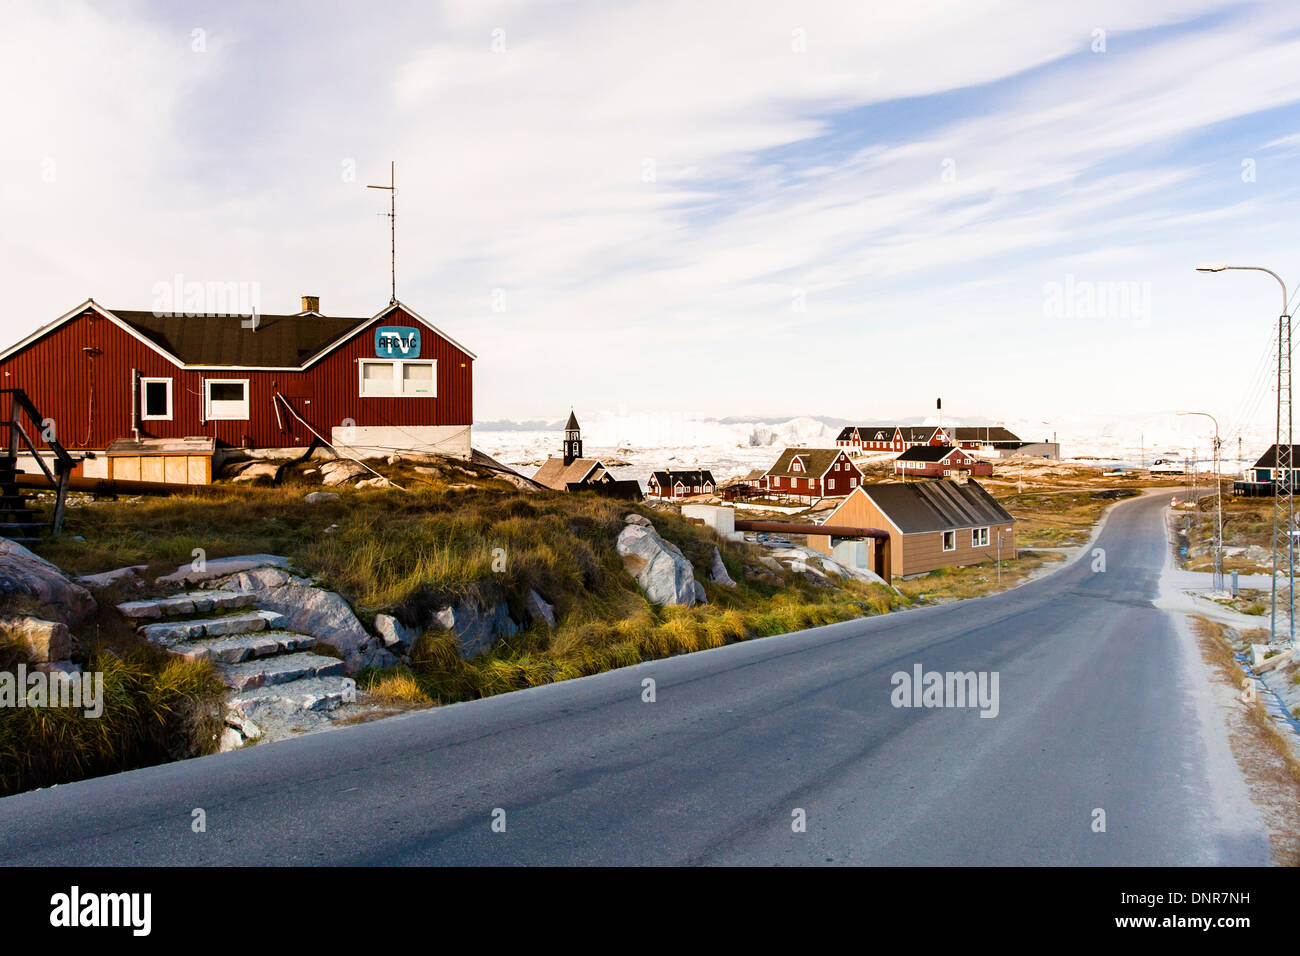 Arctic TV building overlooking empty road in Ilulissat (Jakobshavn), Greenland Stock Photo